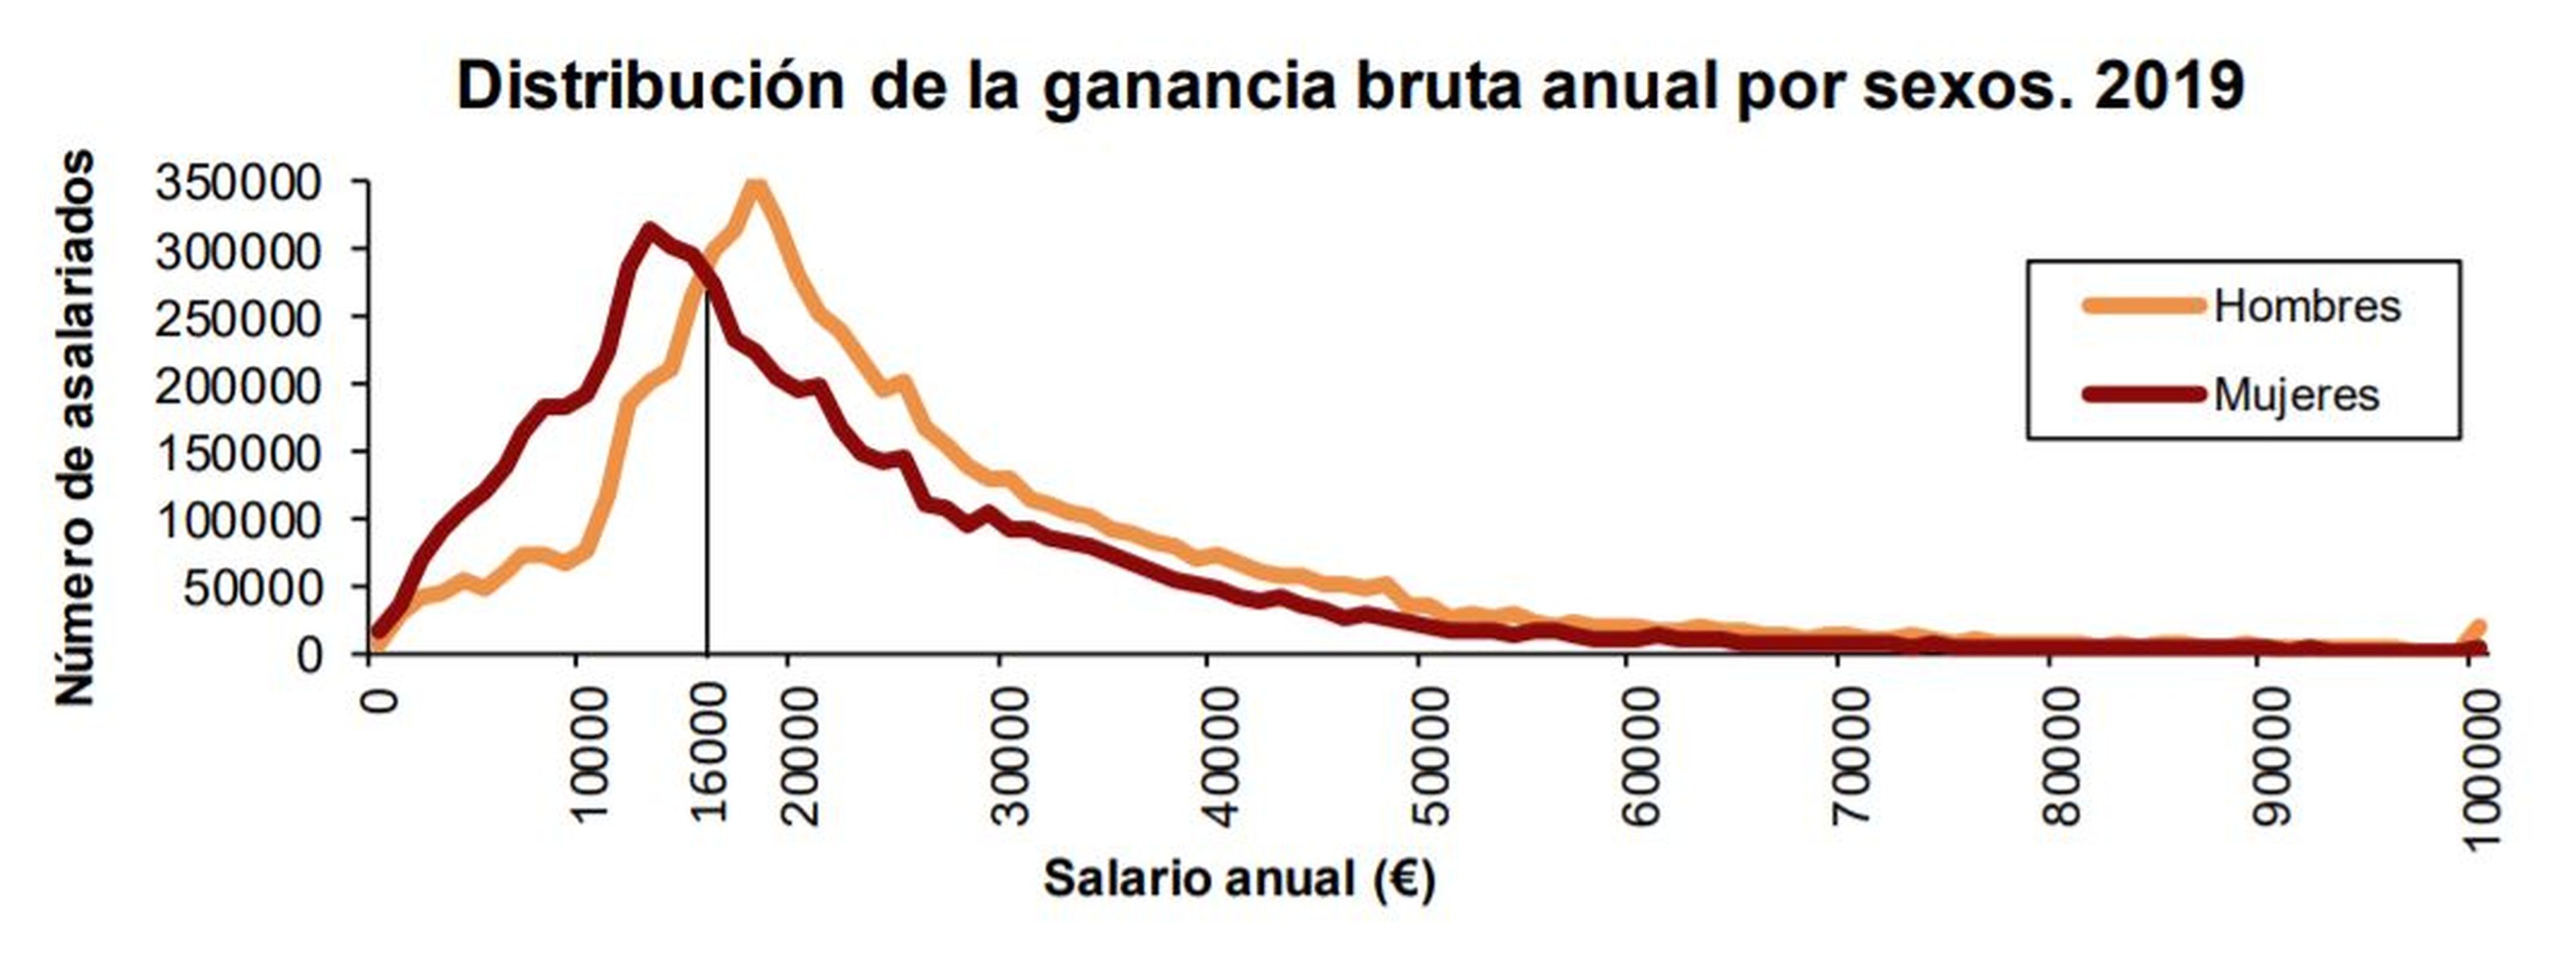 Fuente: Encuesta Anual de Estructura Salarial del INE en 2019.